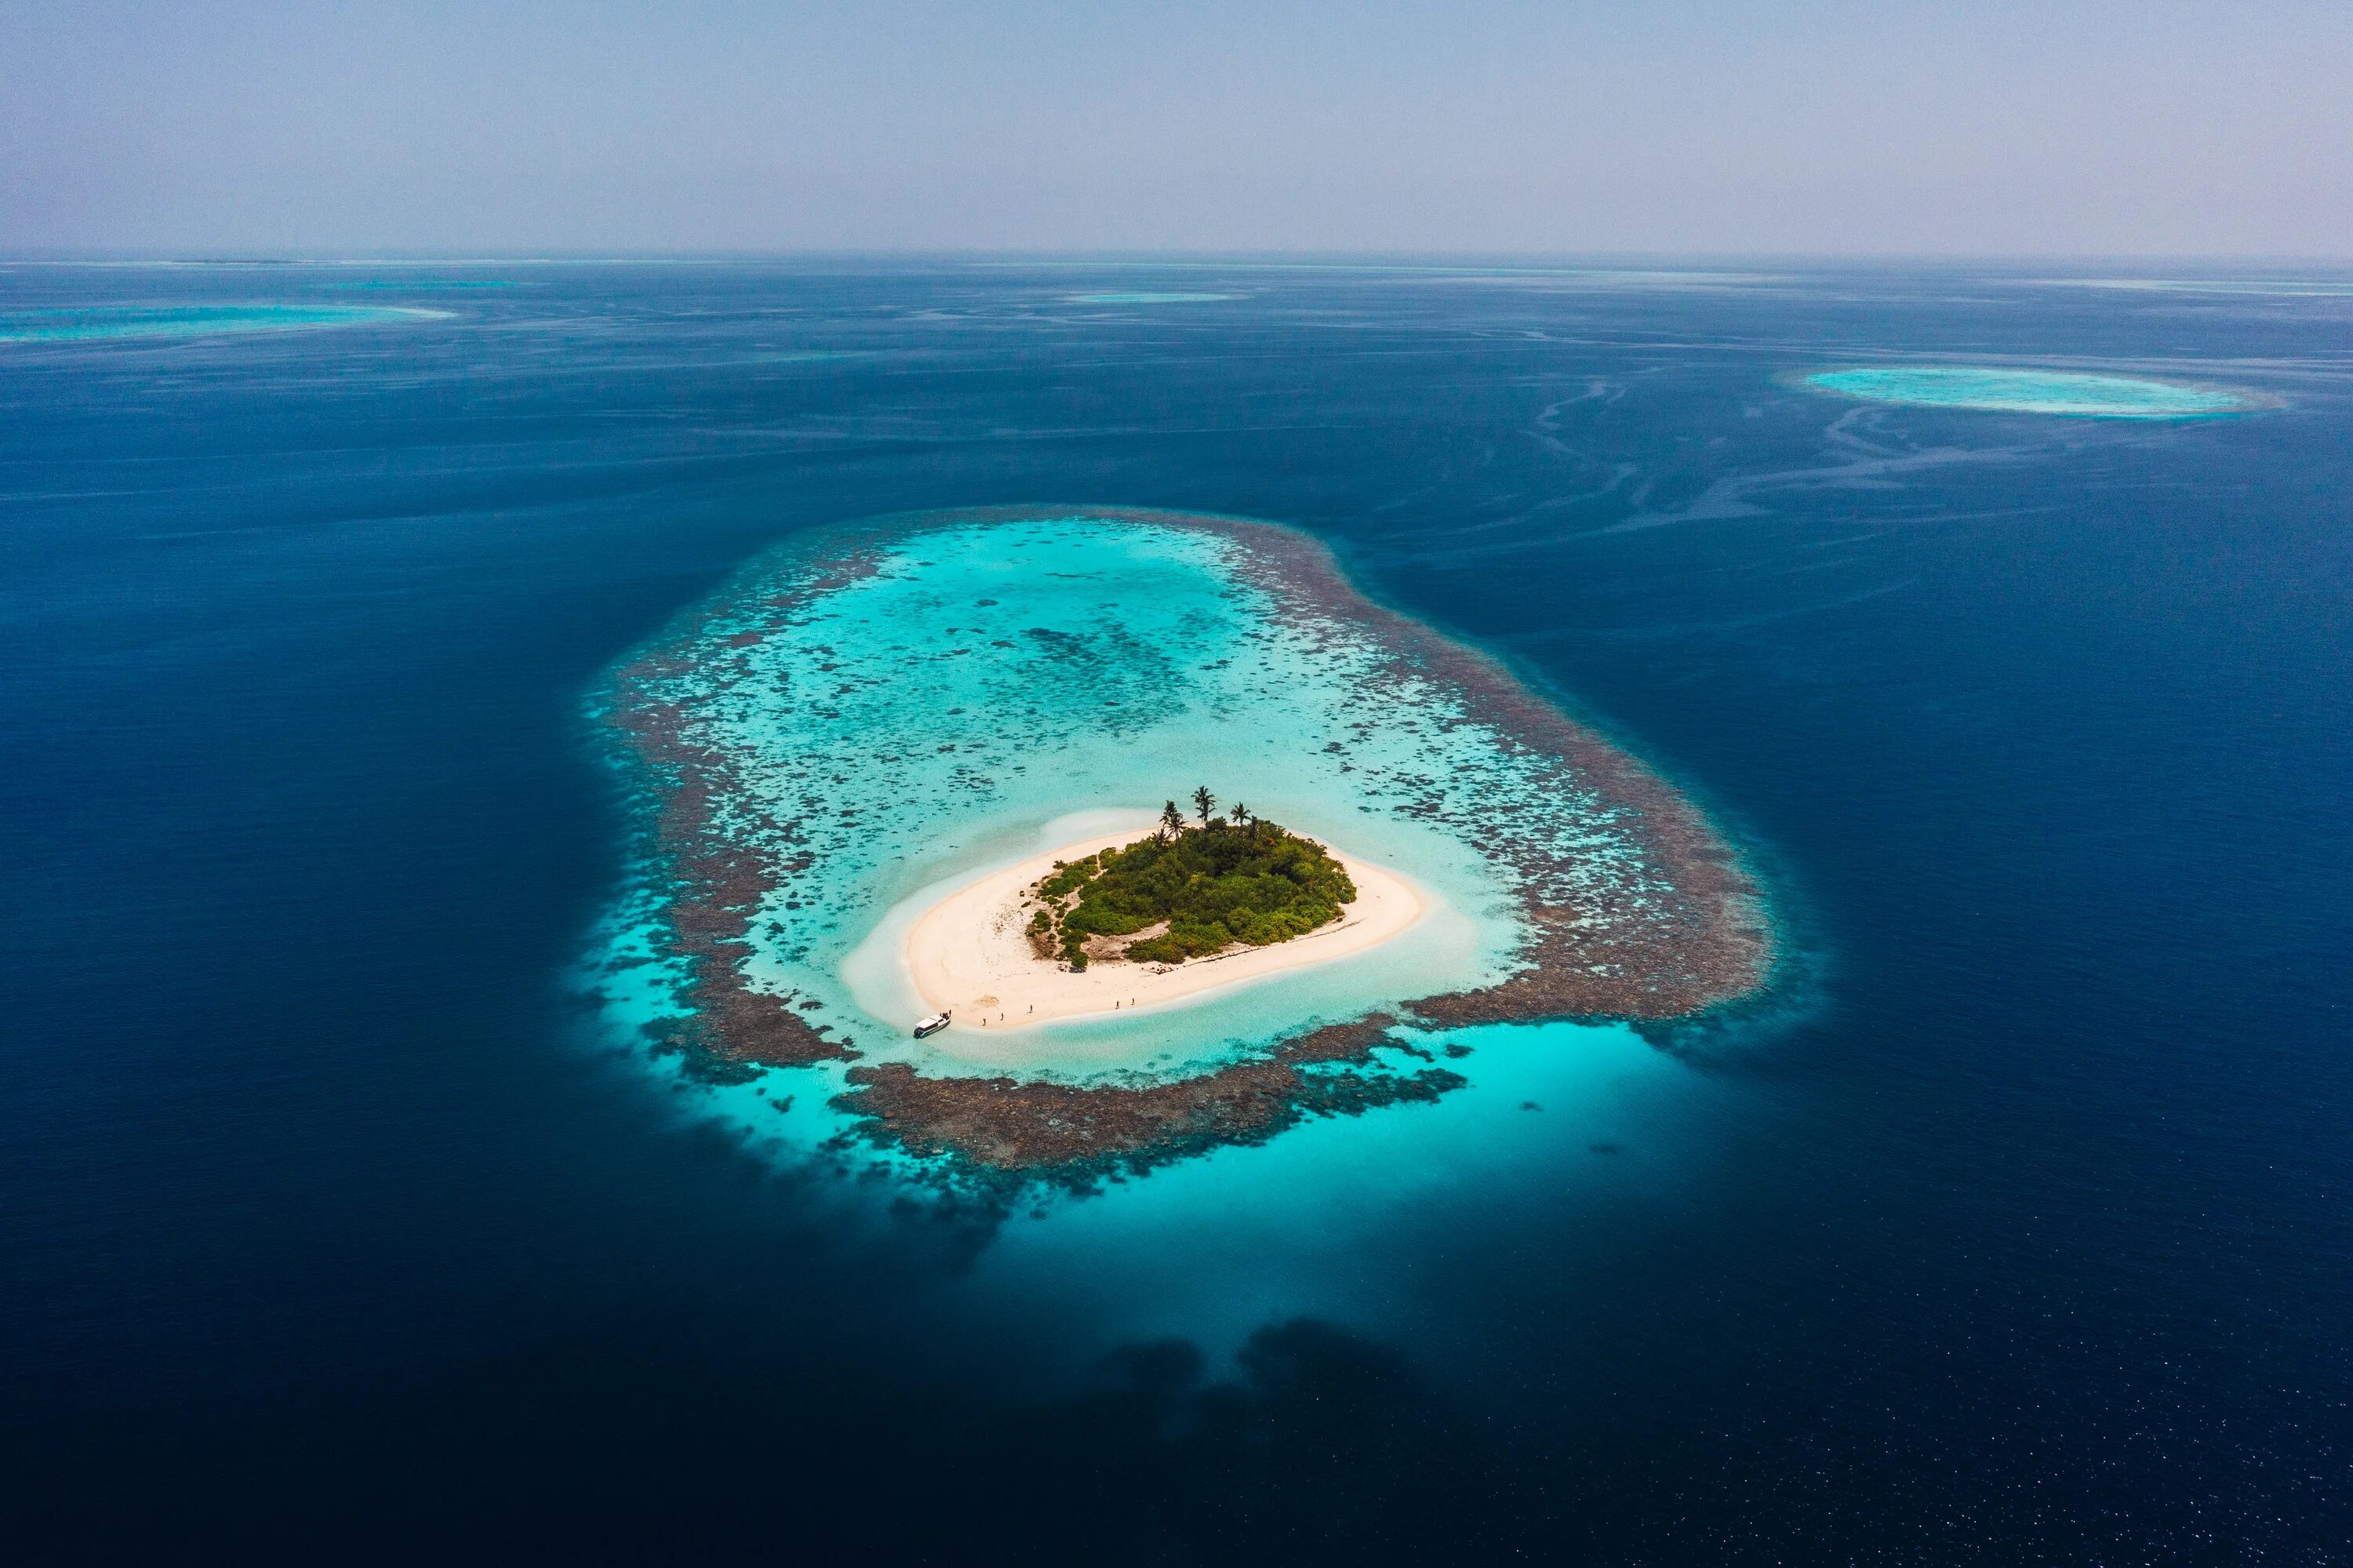 Ntr island. Атоллы Океании. Архипелаг Туамоту. Атолл в тихом океане. Атоллы Мальдив.